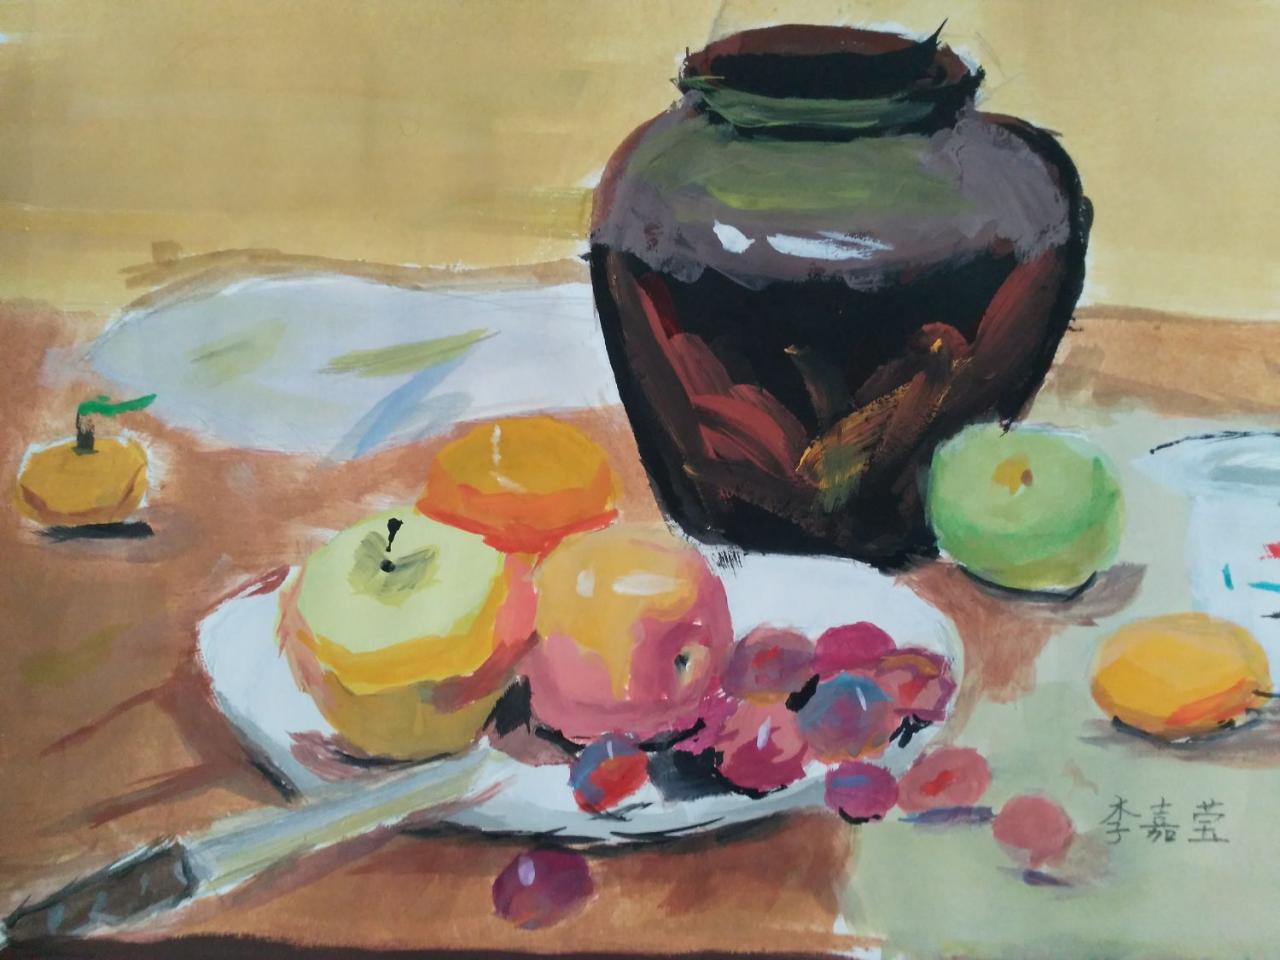 陶罐、苹果、葡萄、芒果、橘子、水果刀等 李嘉莹画